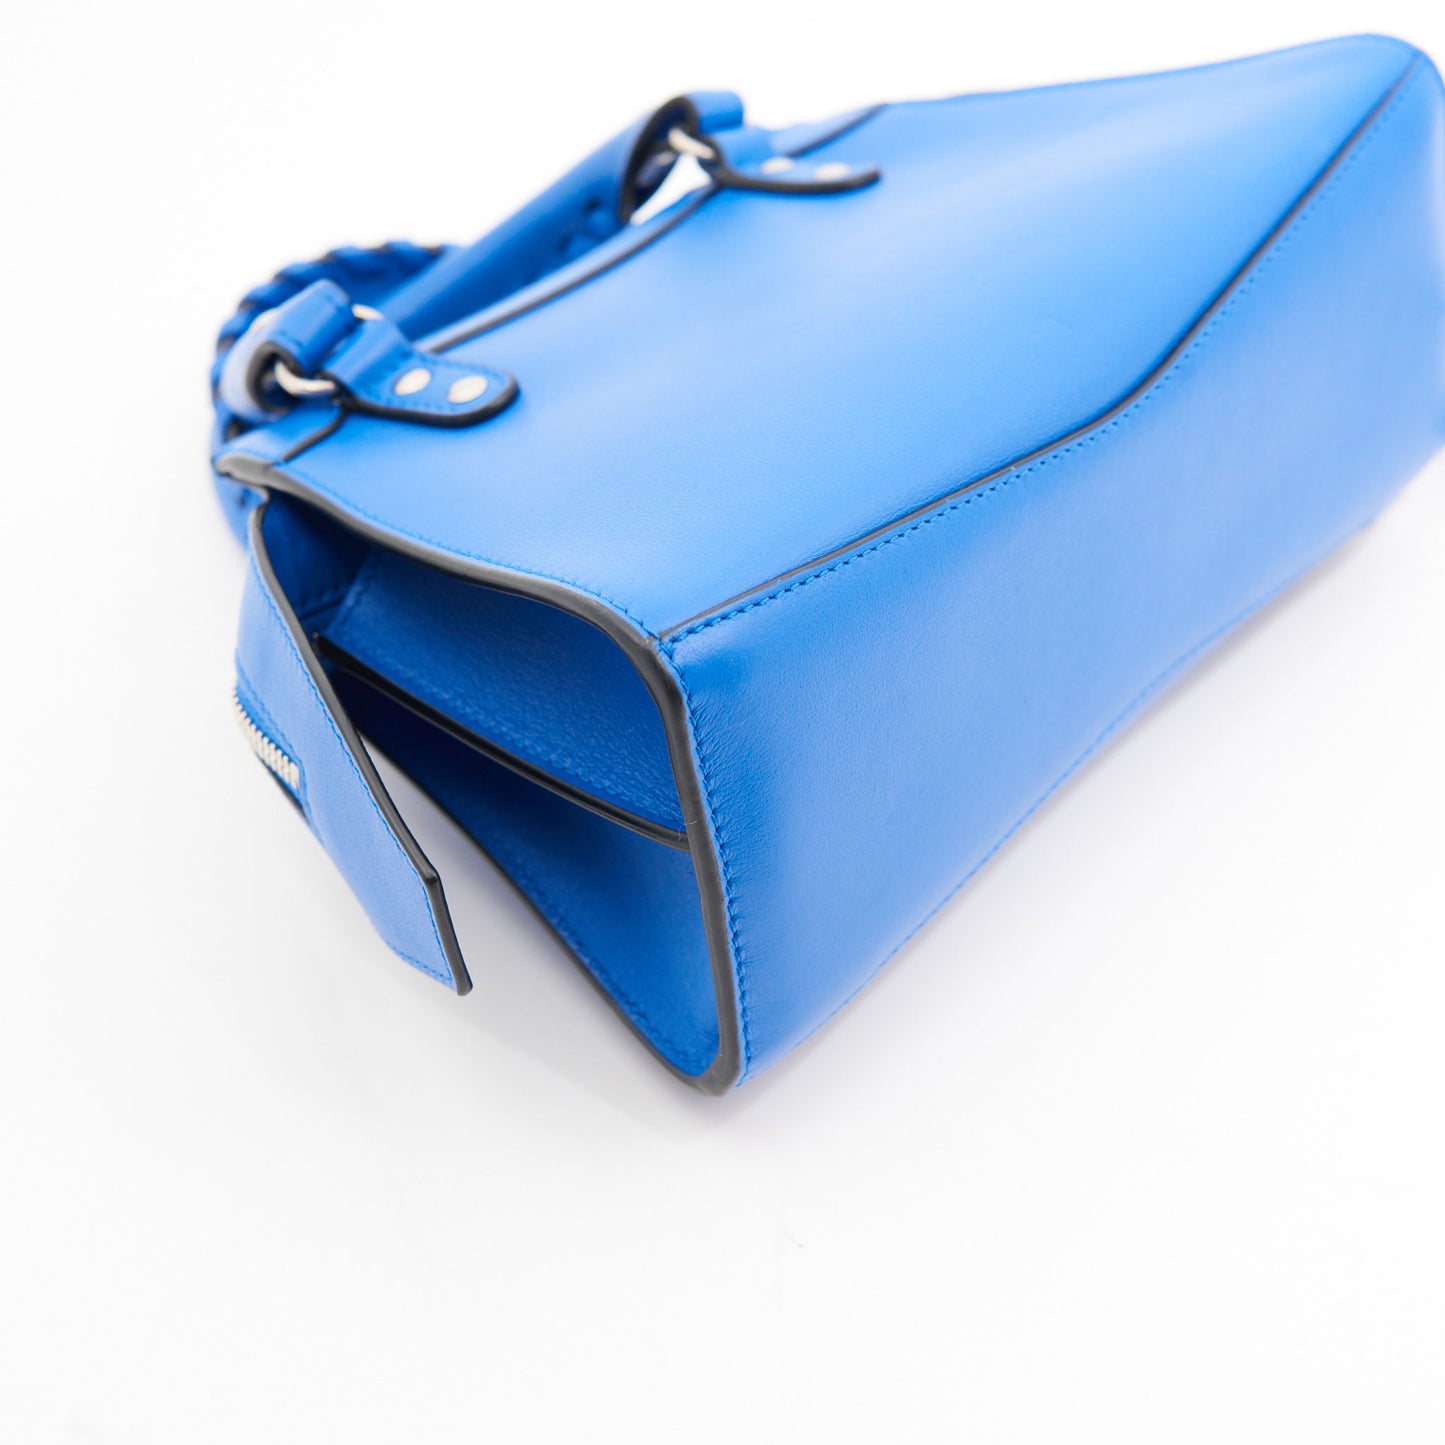 Balenciaga Neo Classic Handbag in Blue